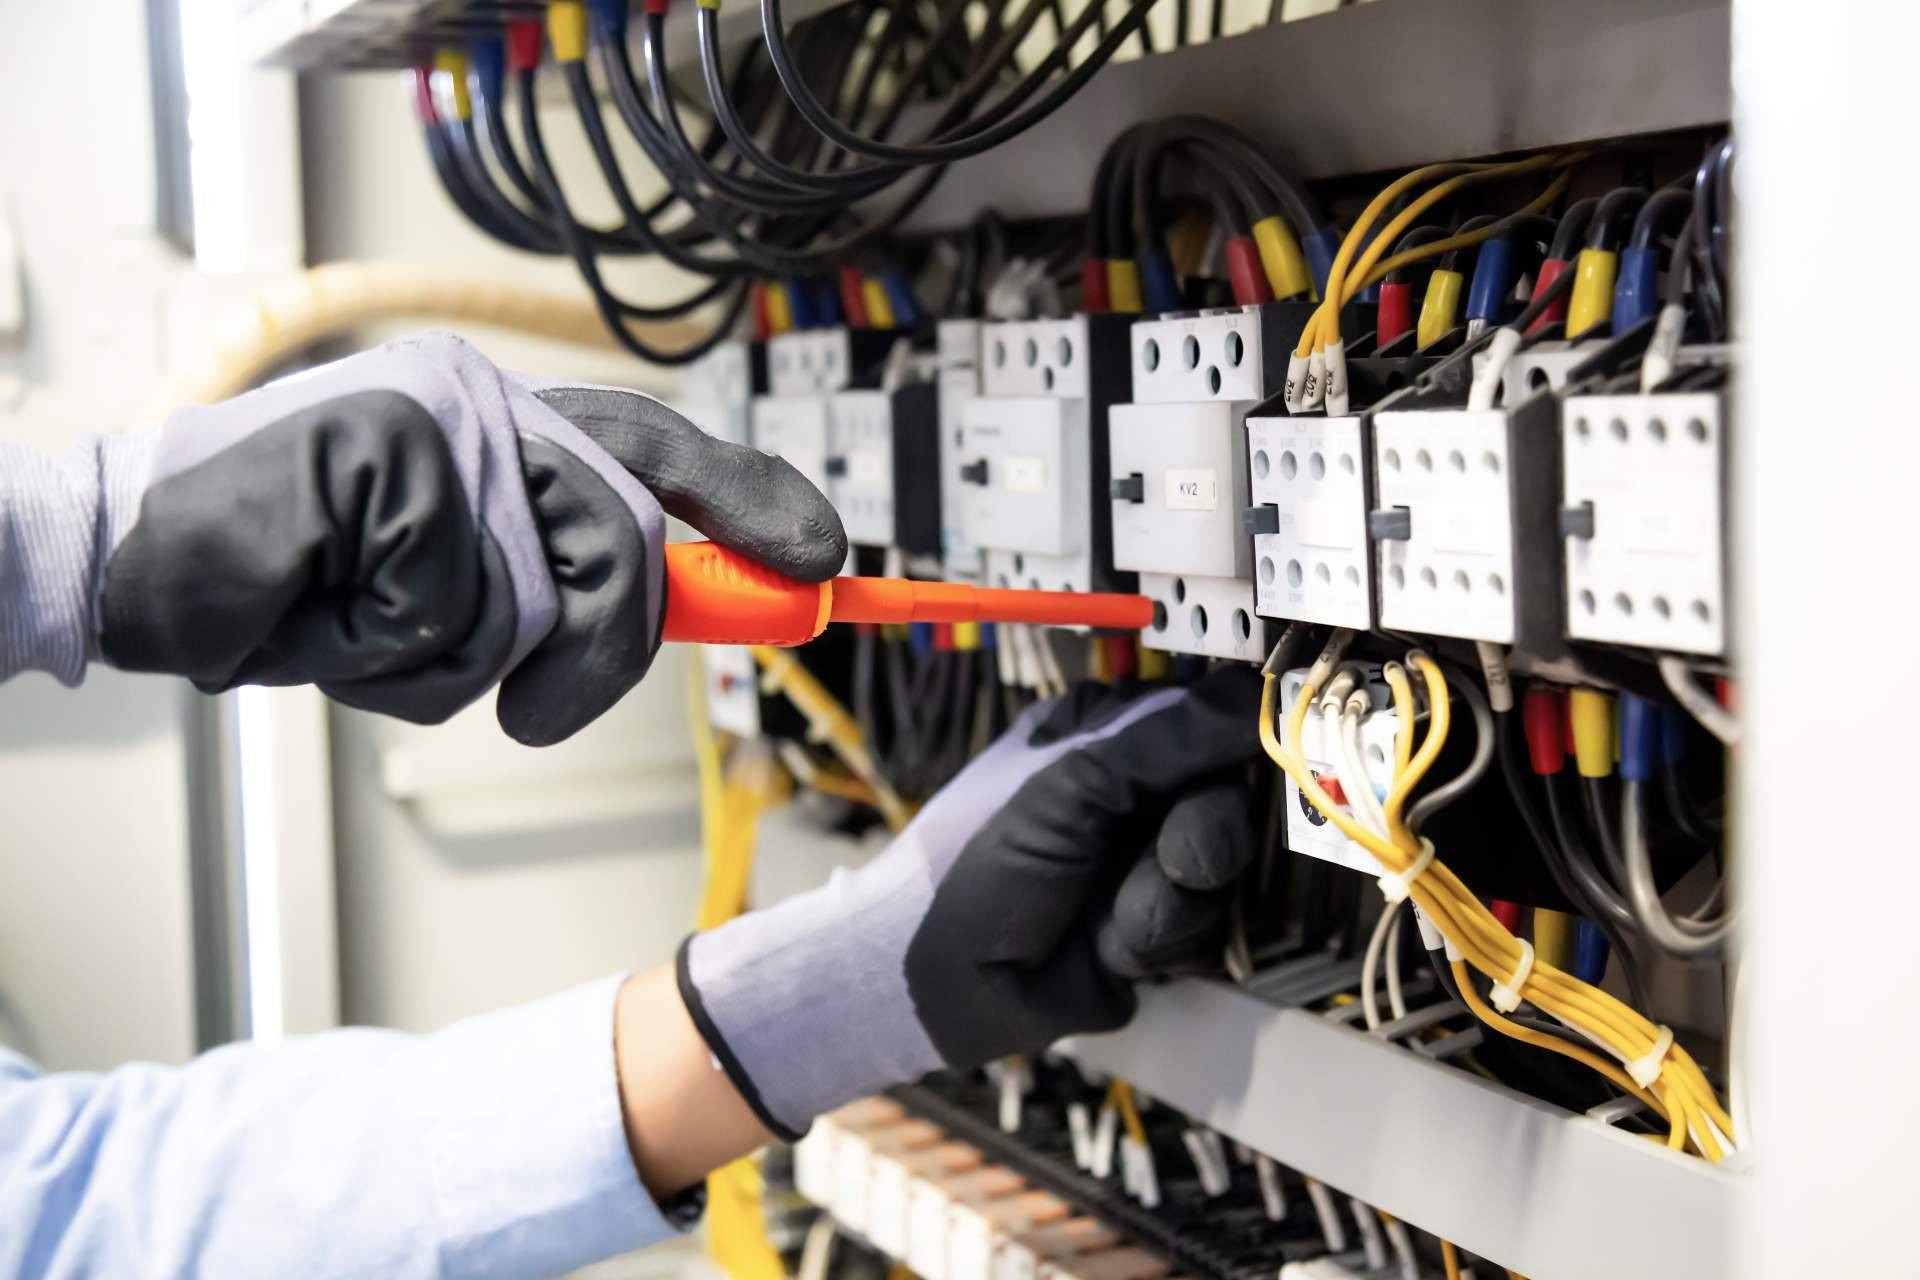  Servicios profesionales de electricistas en Madrid de la mano de ISSE 